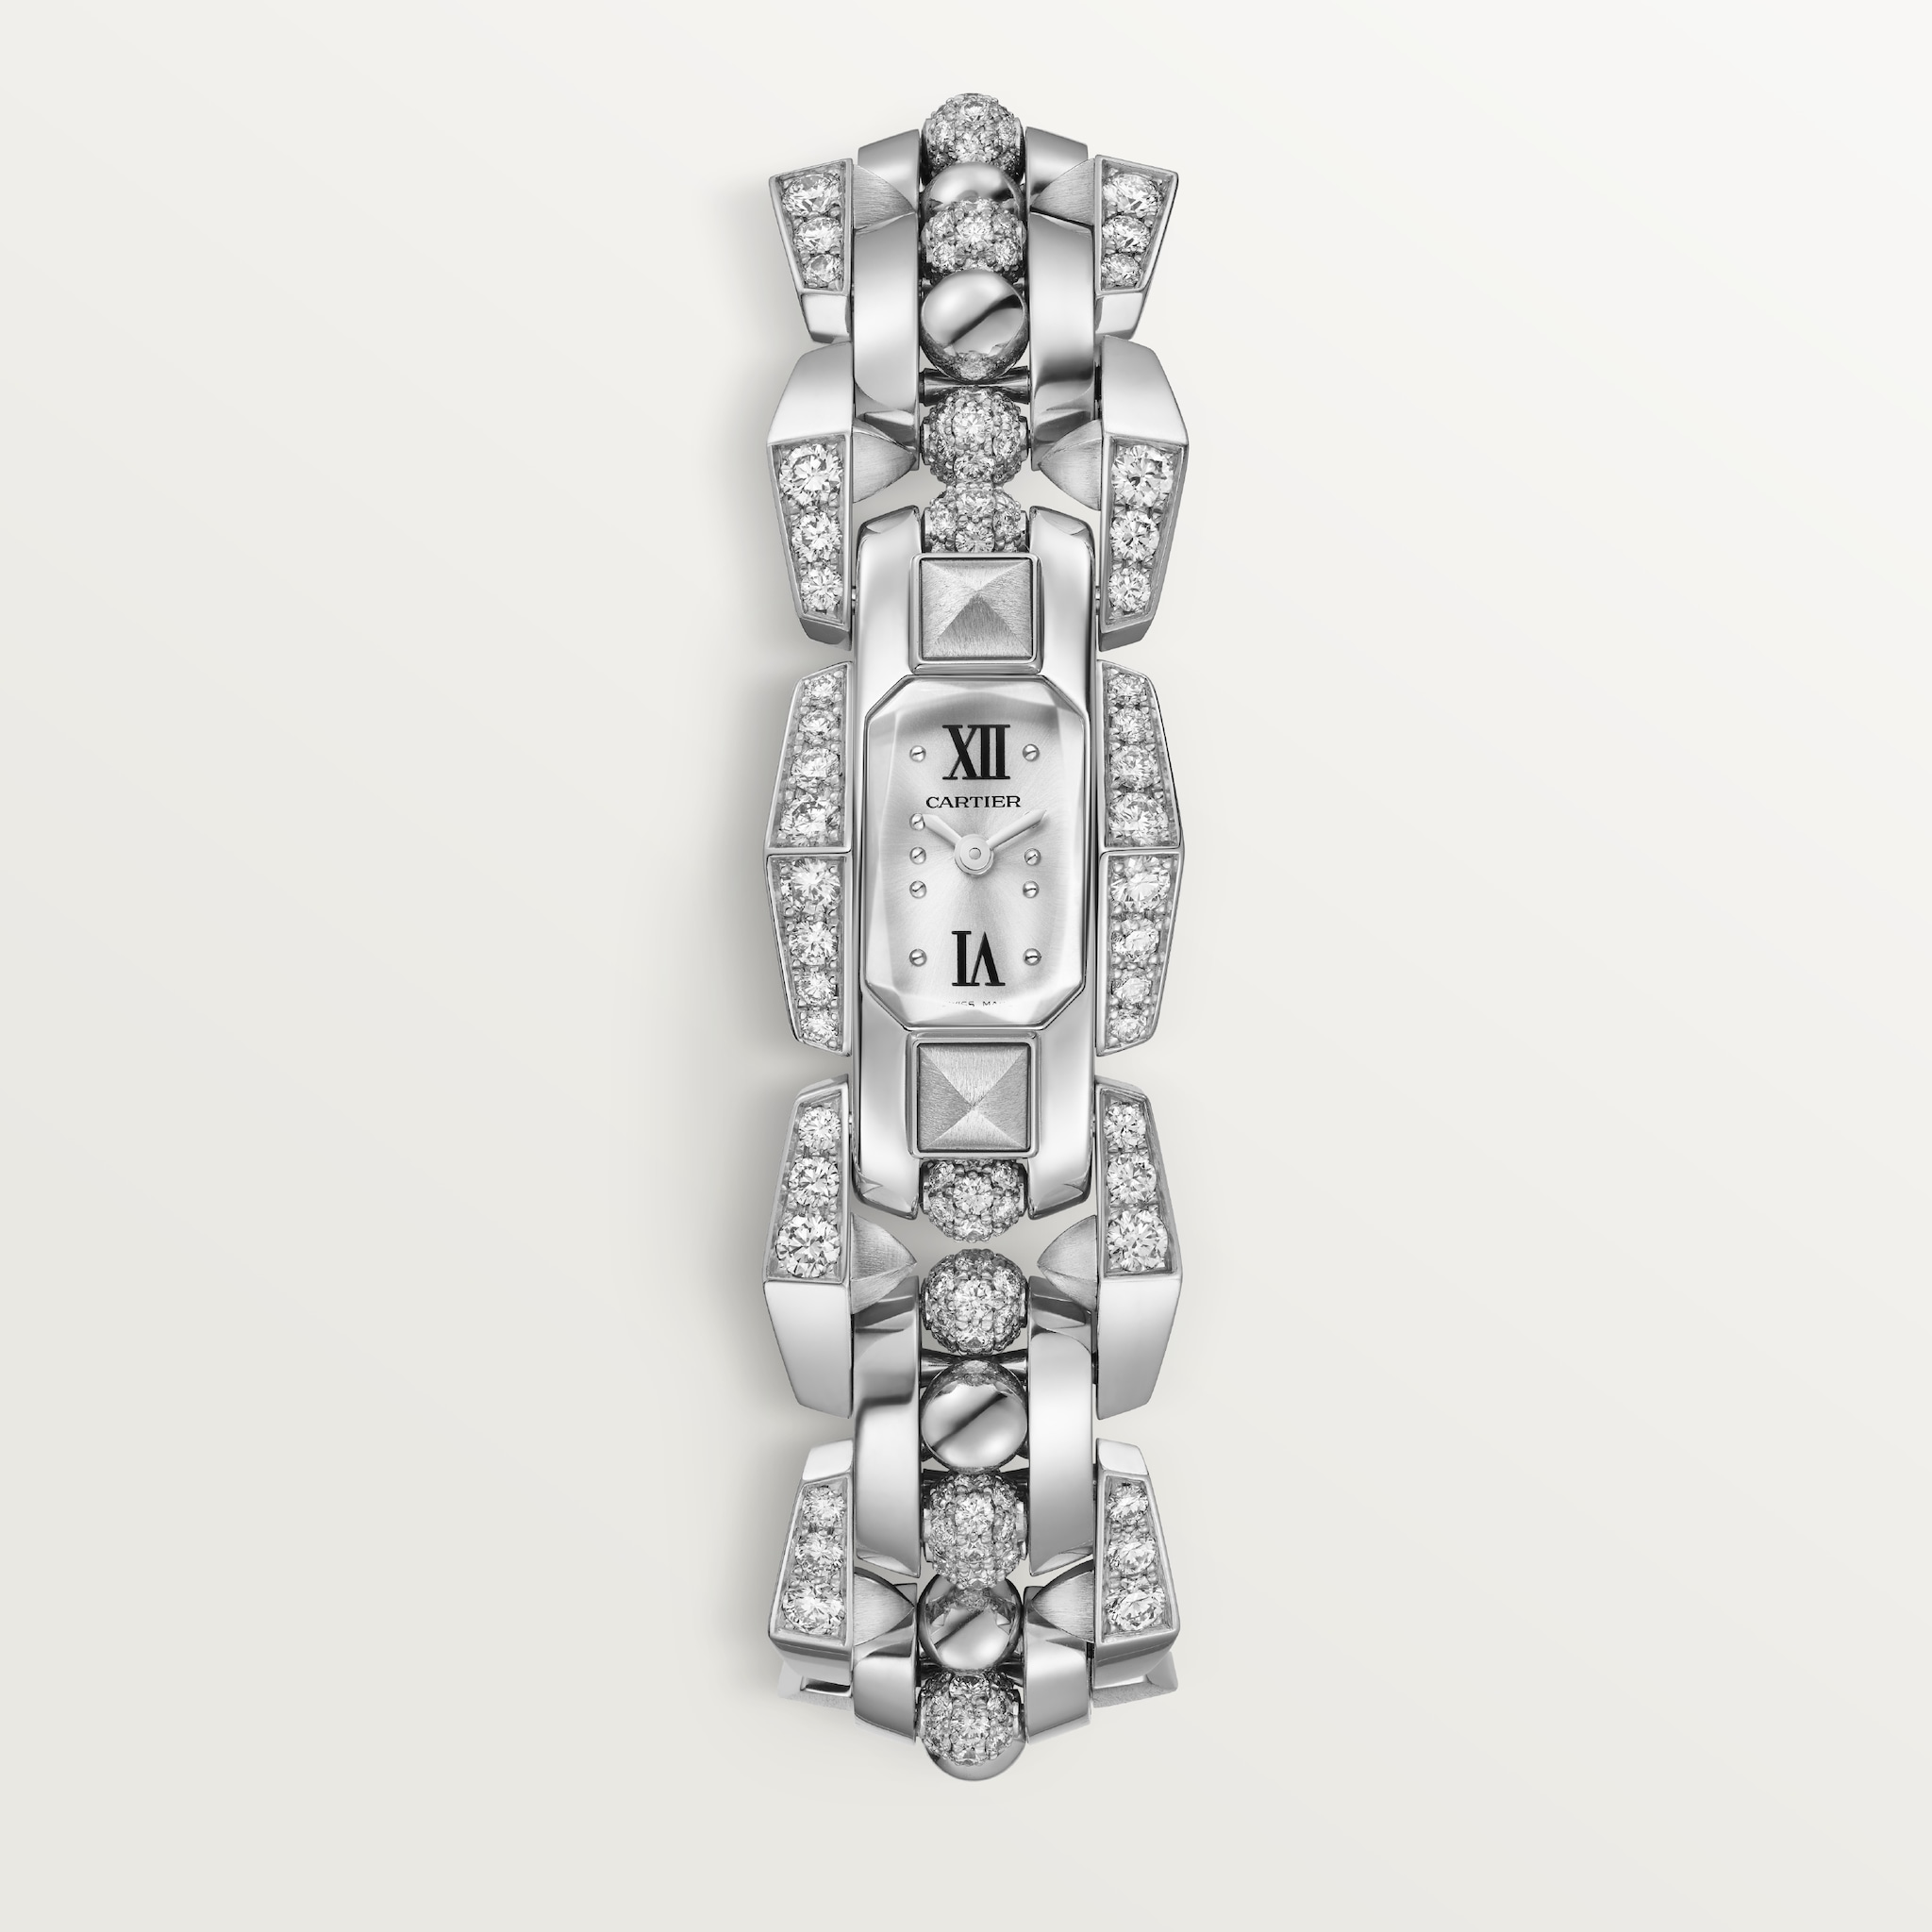 Clash [Un]limited watchSmall model, quartz movement, rhodium-finish white gold, diamonds